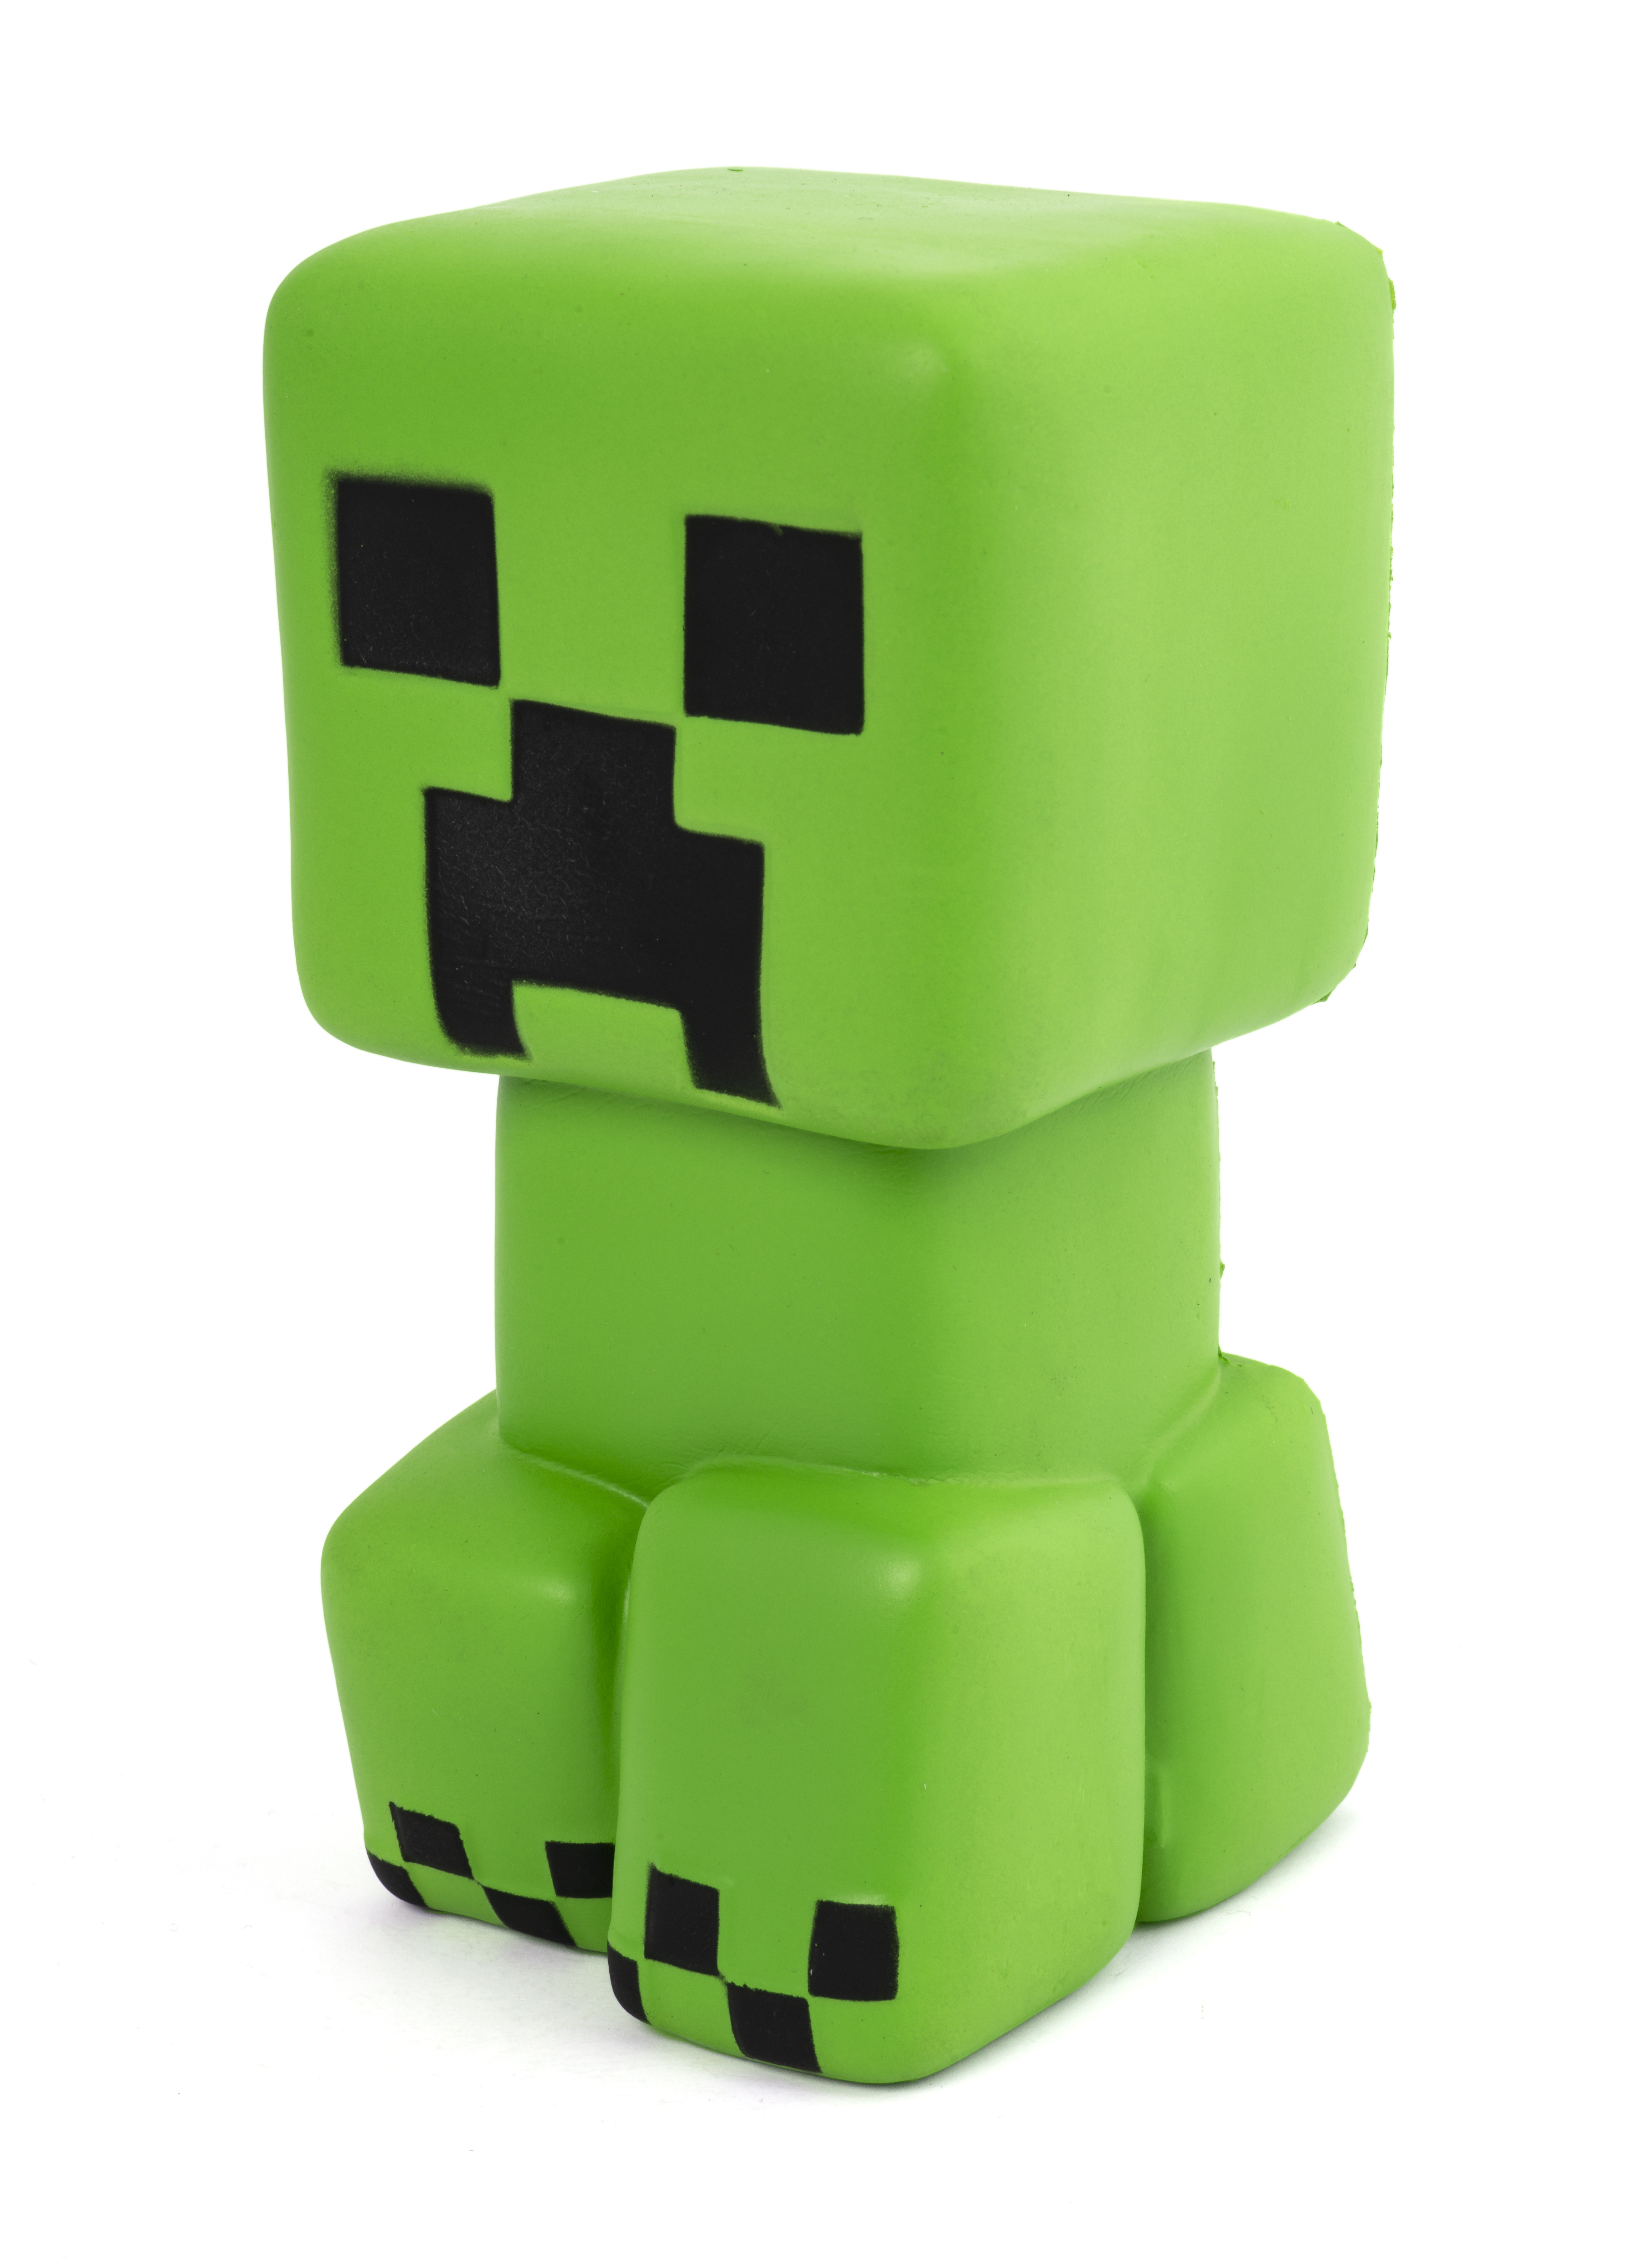 Minecraft SquishMe - Green Creeper